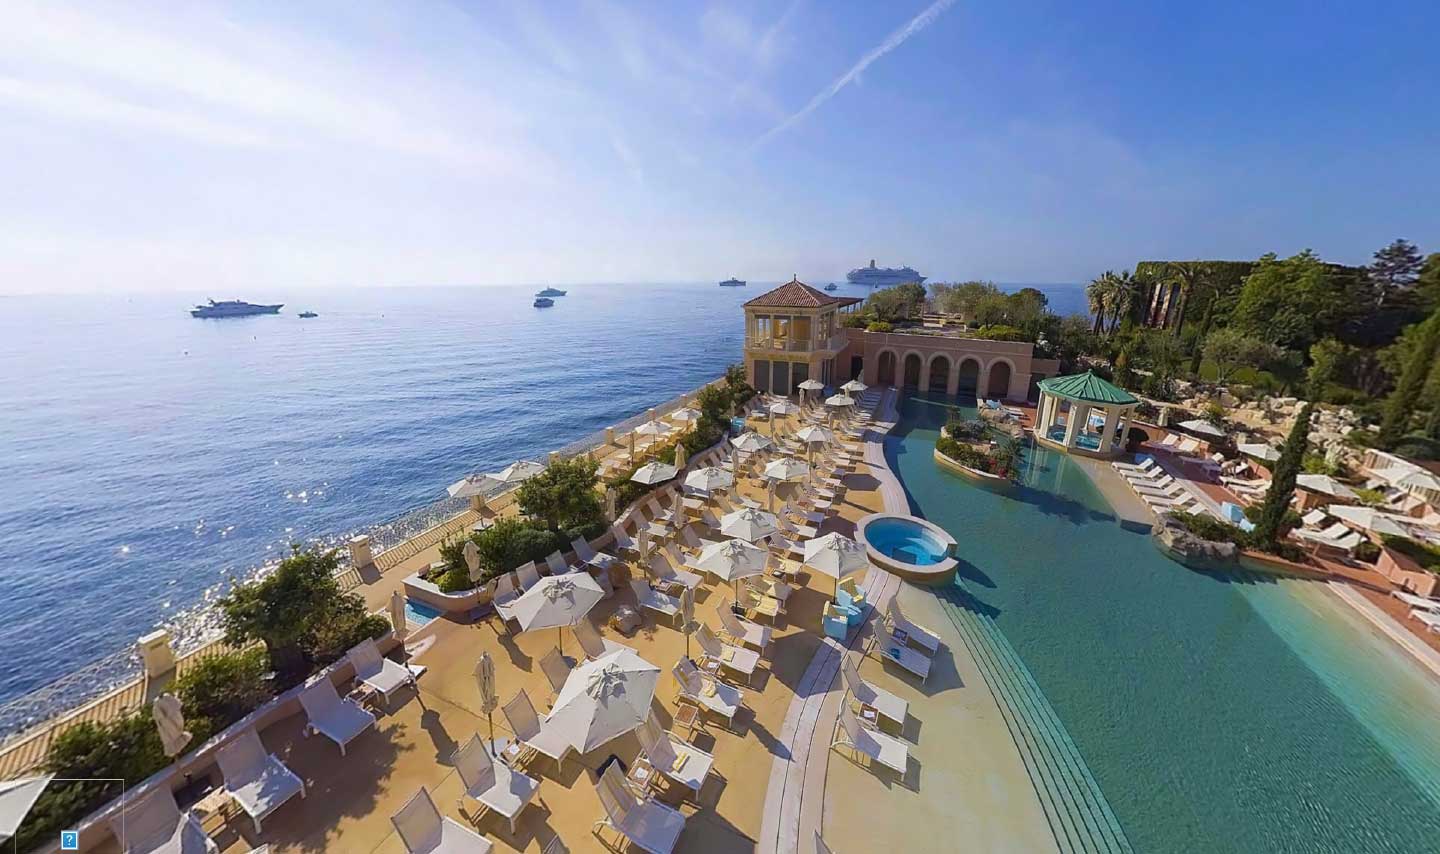  - Company incentive retreat to Monaco